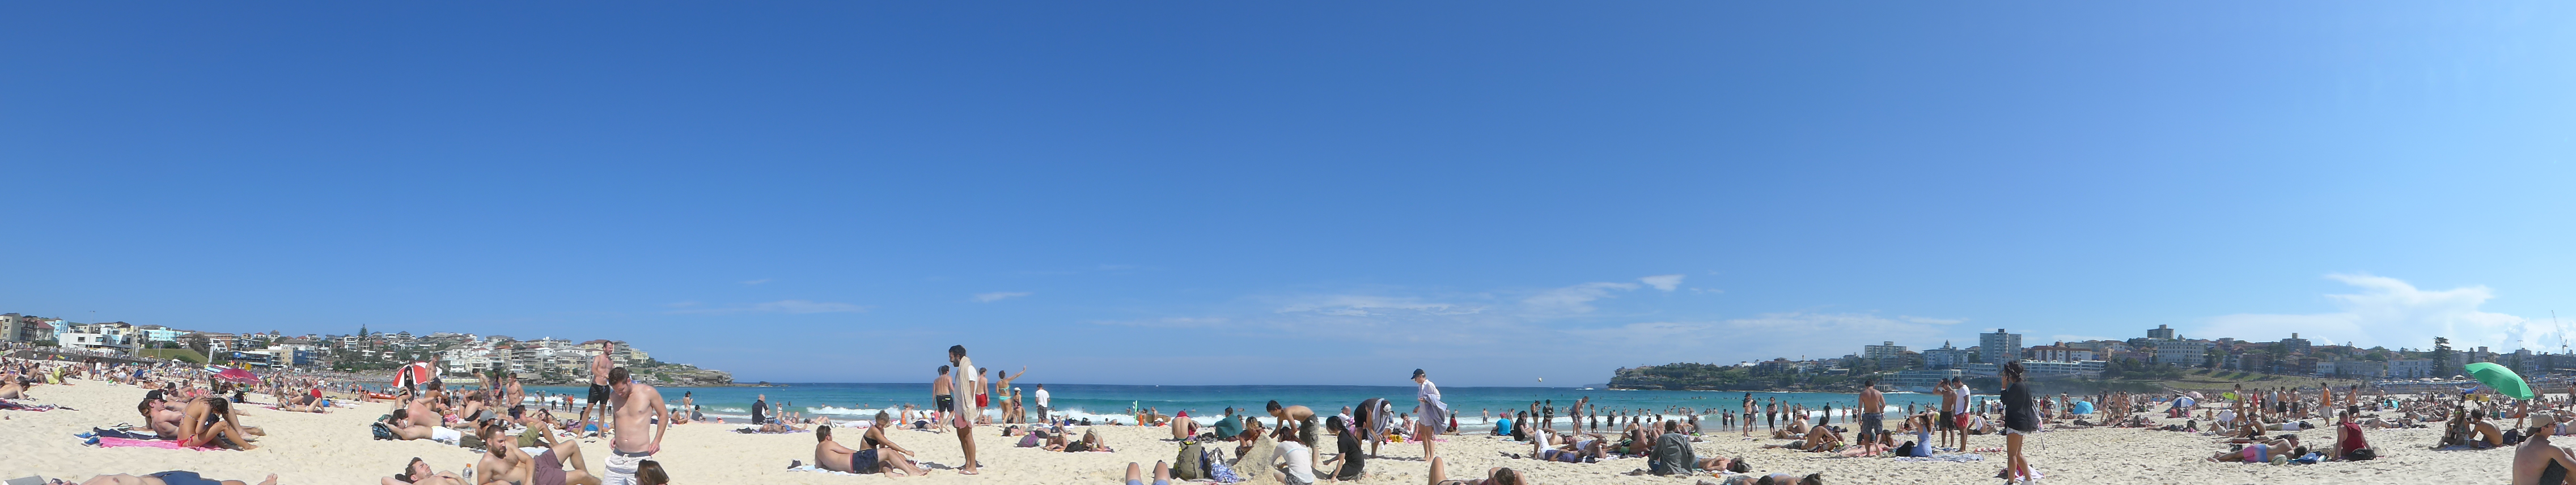 Oder einfach mal am Strand liegen - zusammen mit Millionen anderen am Bondi Beach